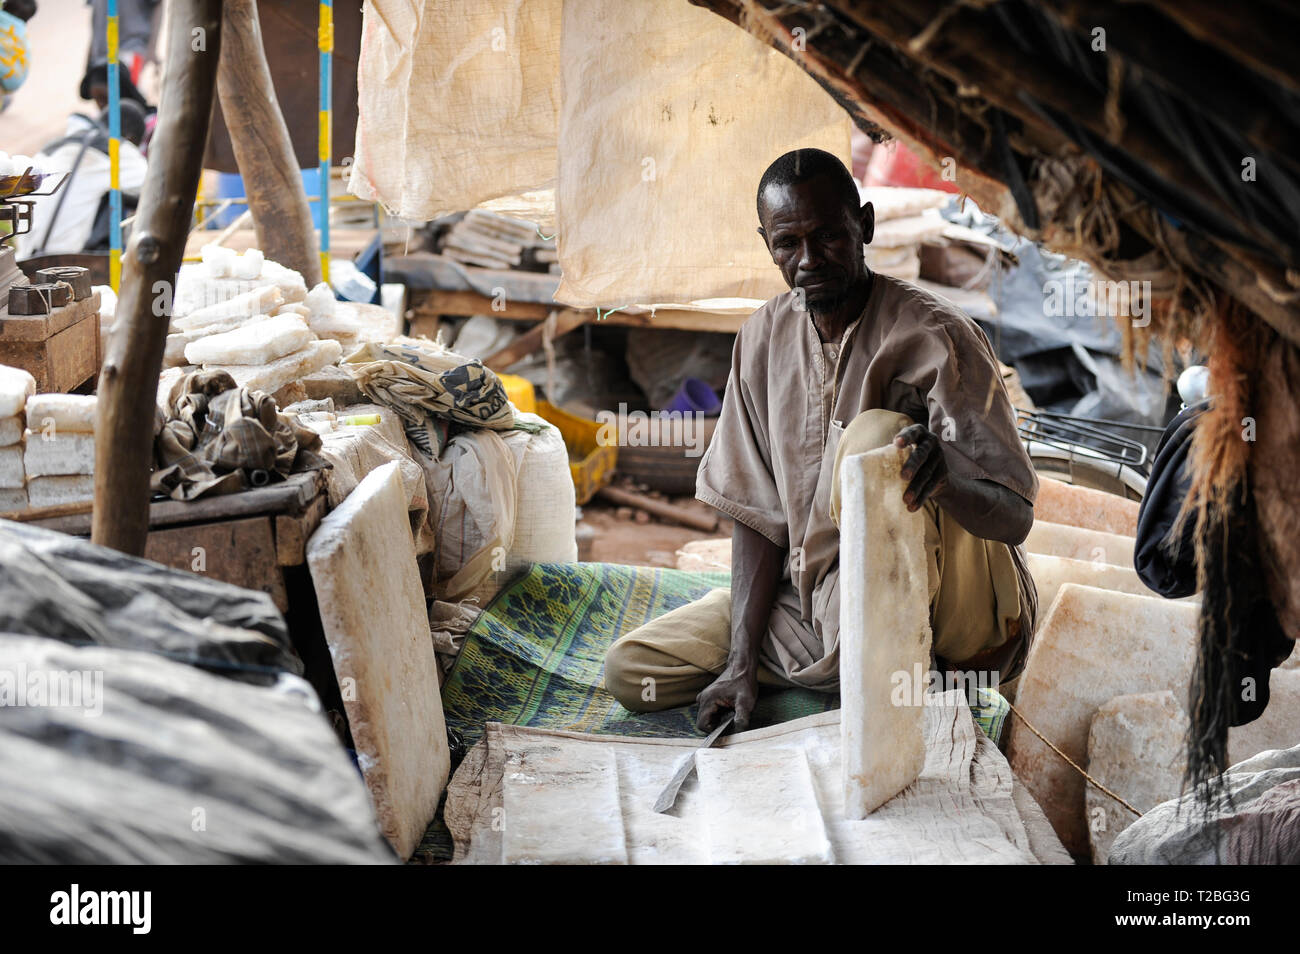 MALI, Mopti, marchand vend au marché du sel, le sel vient de la plaque par l'intermédiaire de Tombouctou à partir de caravanes de chameaux dans le Sahara Taoudenni Banque D'Images